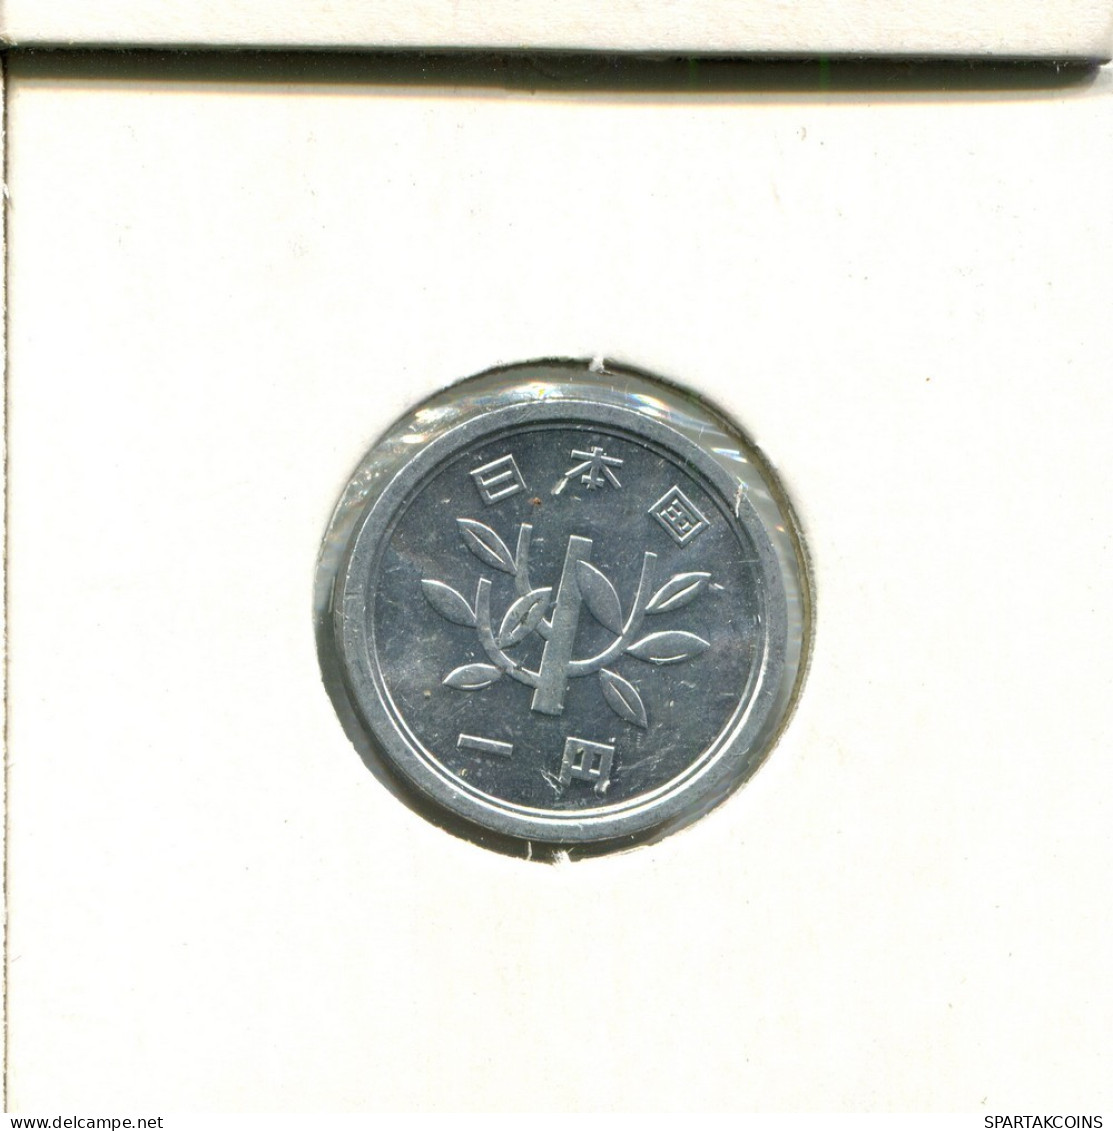 1 YEN 1984 JAPON JAPAN Moneda #AT838.E.A - Japan